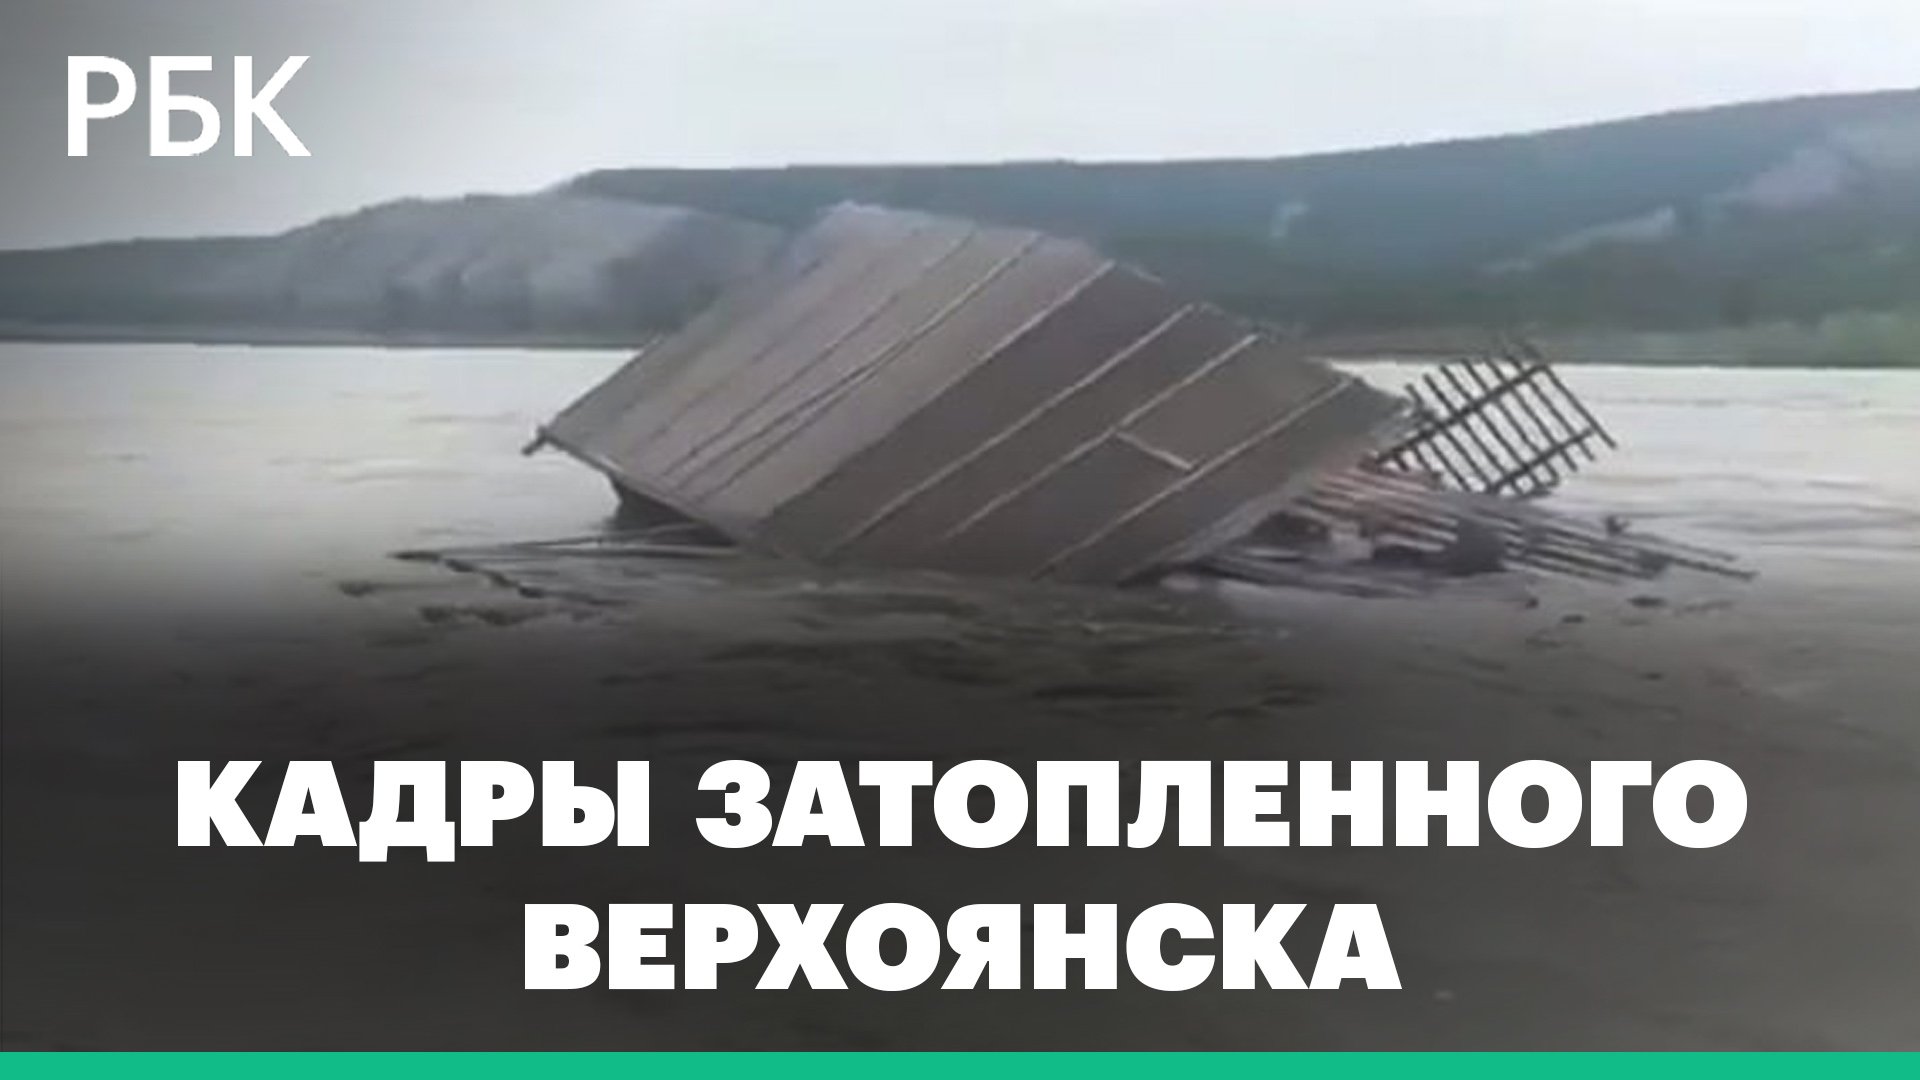 Обломки дома плывут по реке. Верхоянск затопило из-за прорыва дамбы: видео